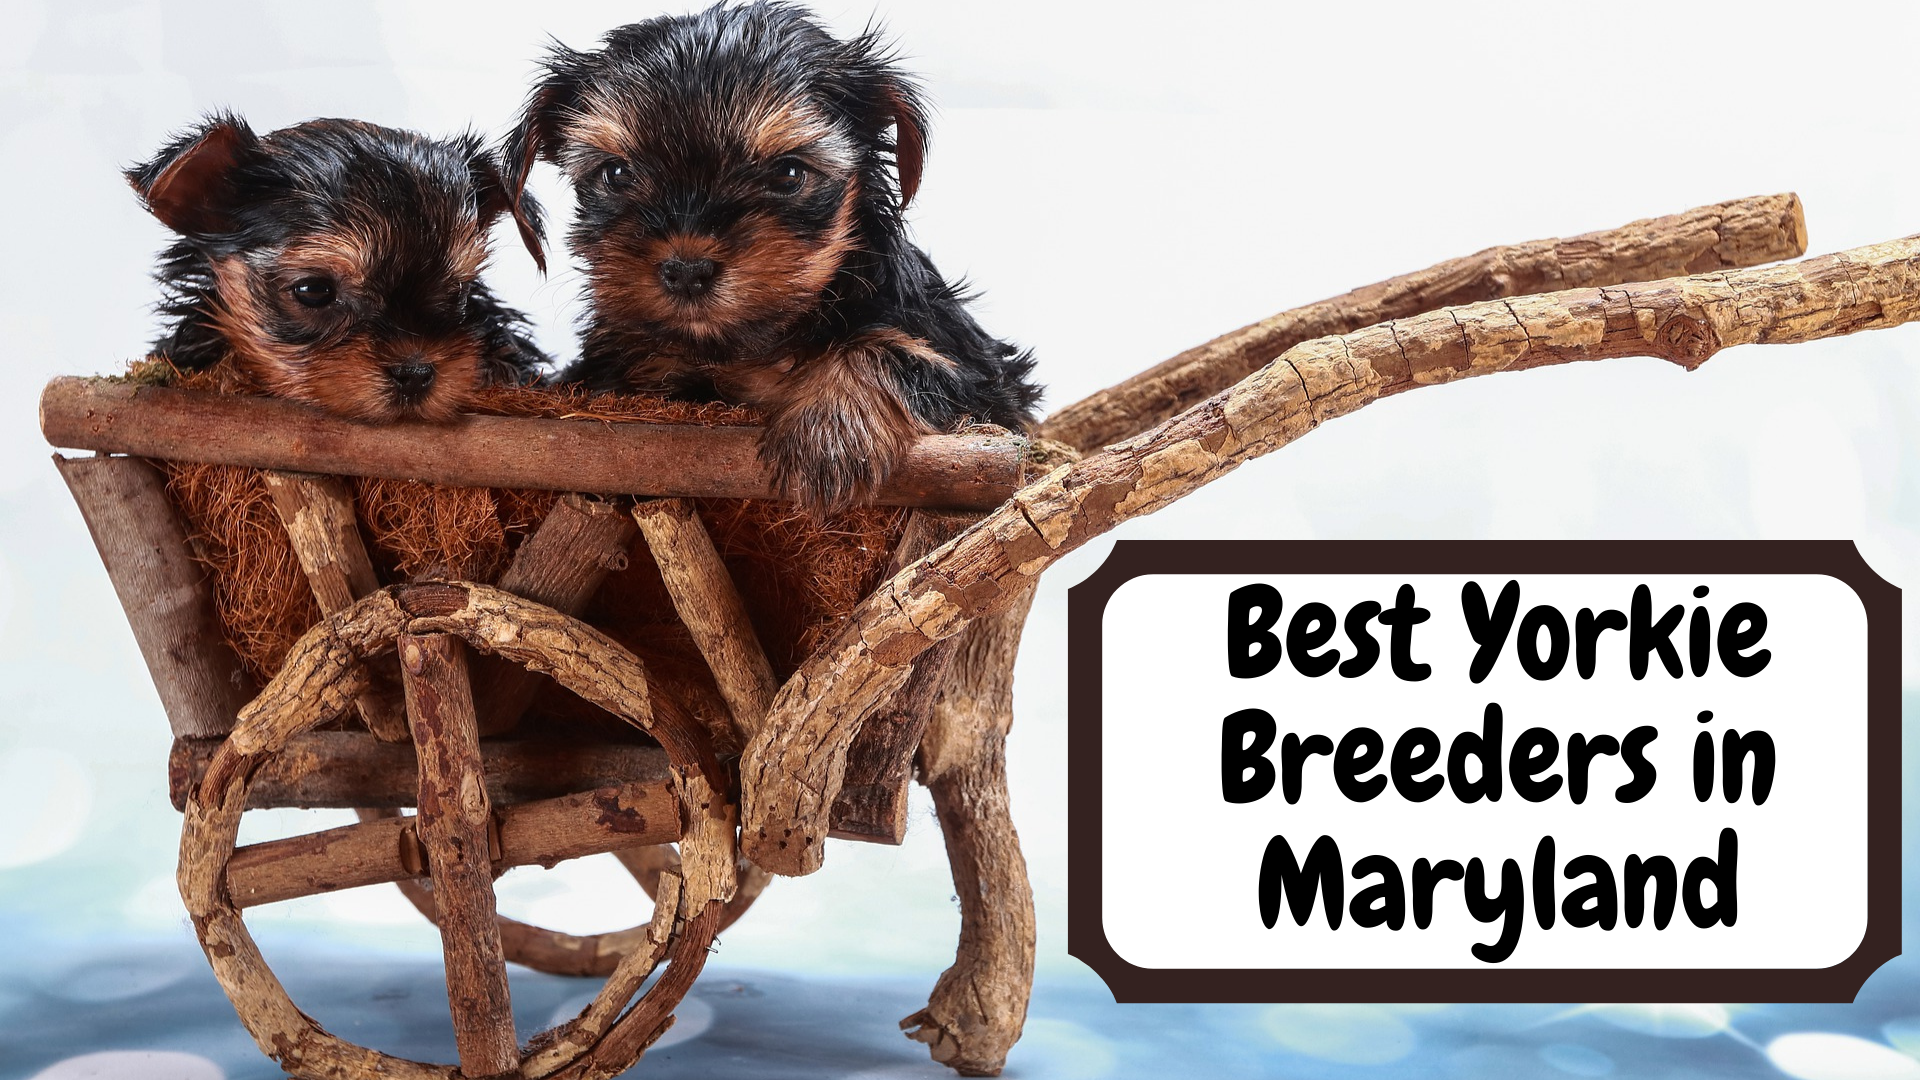 Best Yorkie Breeders in Maryland